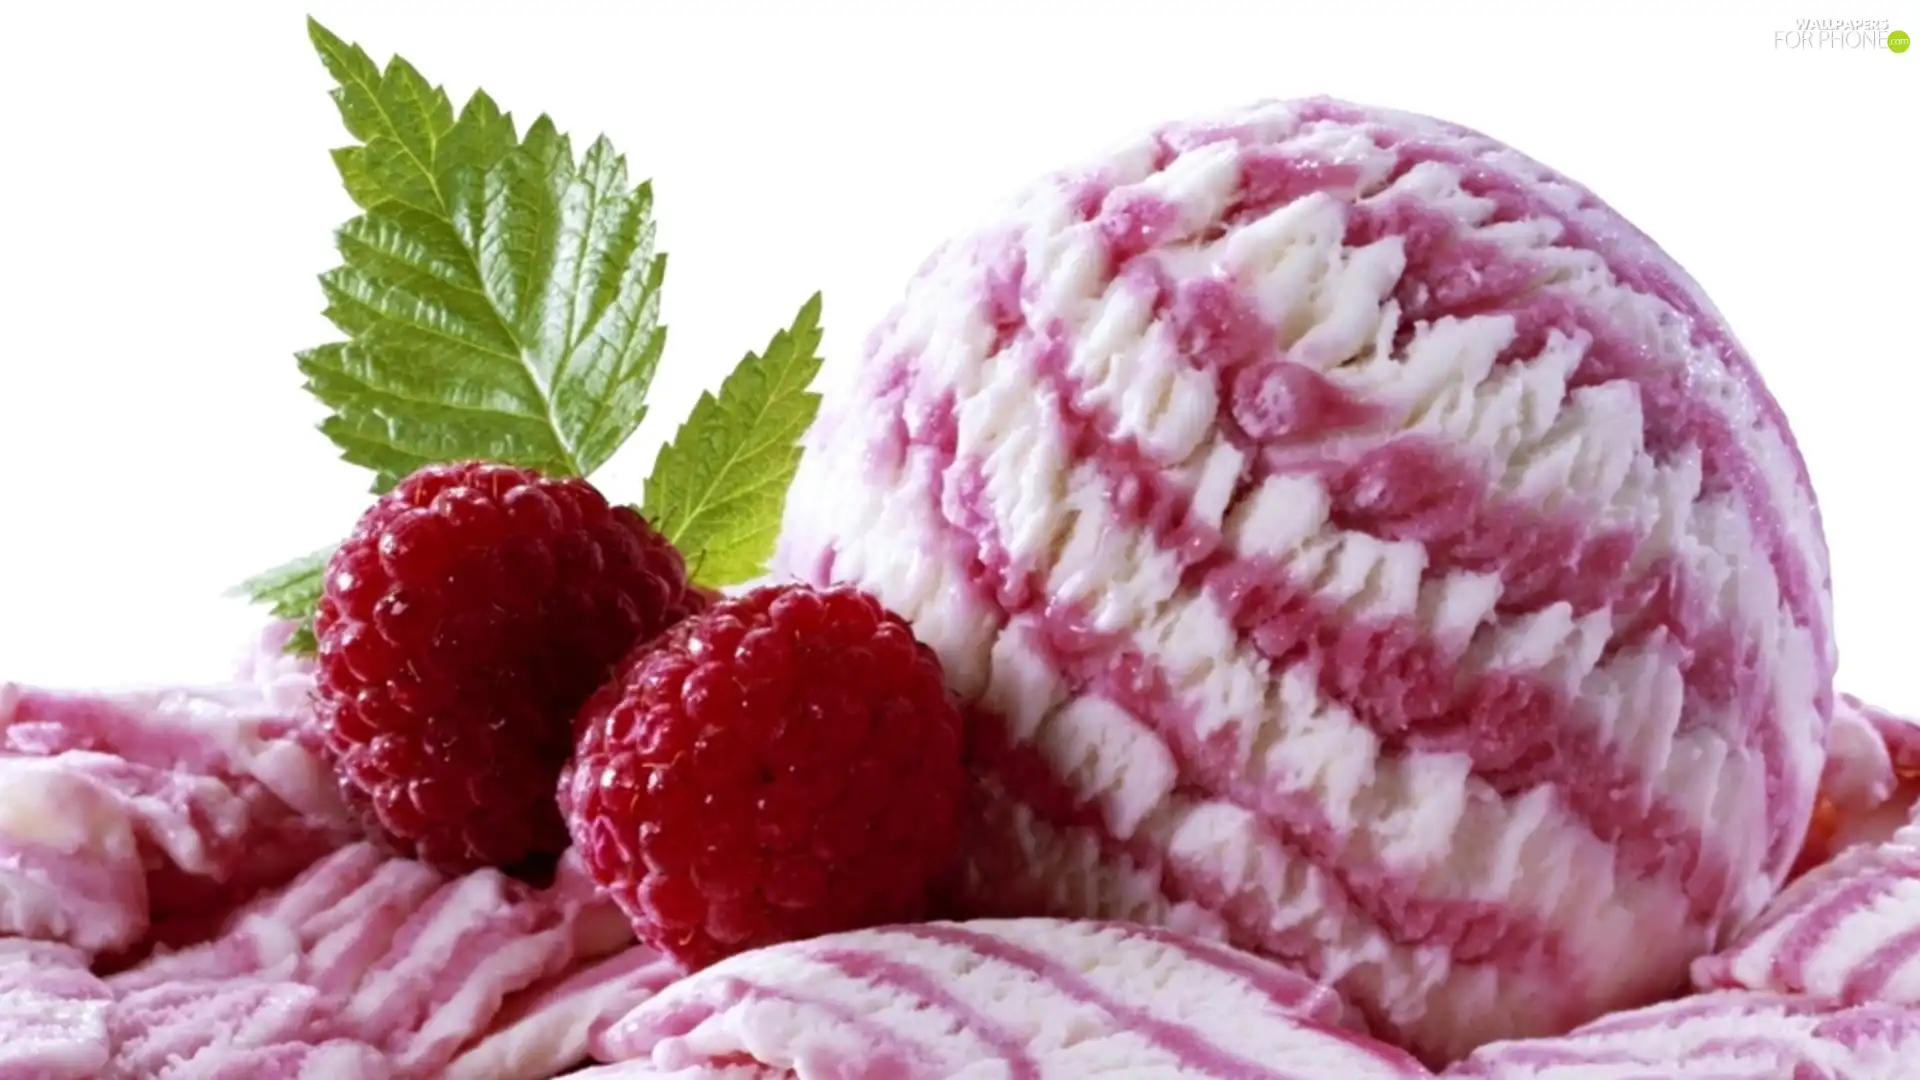 raspberry, ice cream